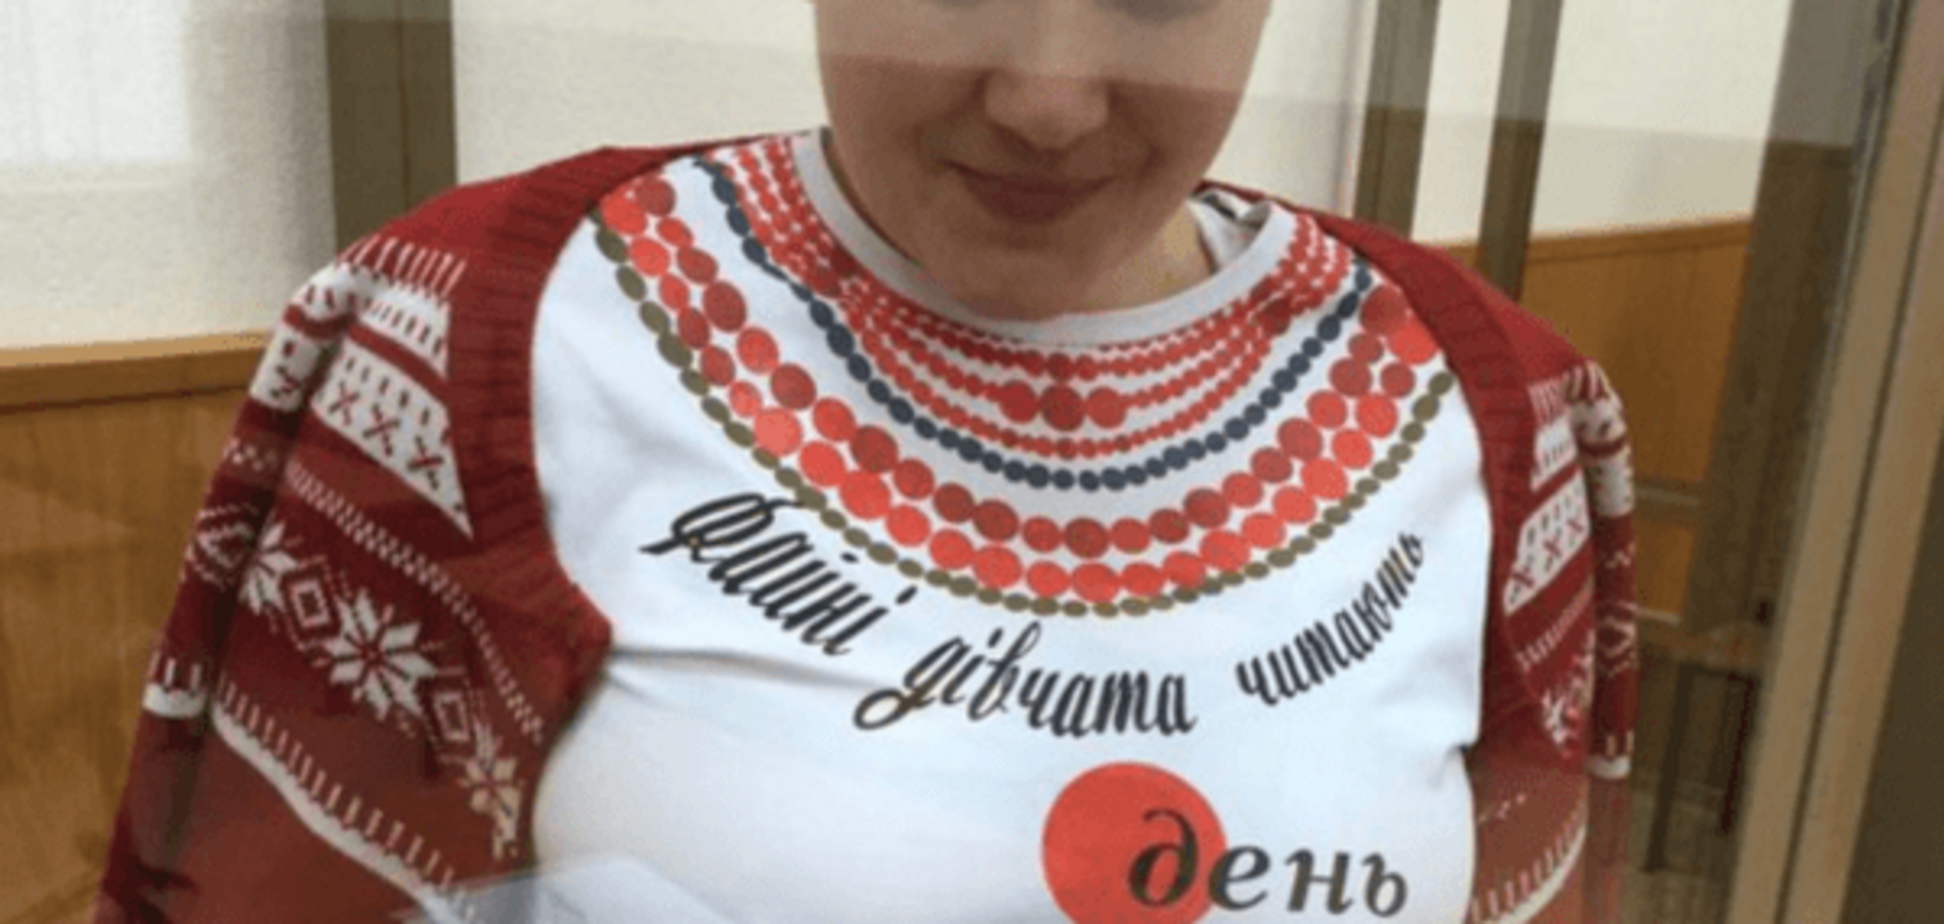 Савченко на грудях написала питання Путіну: фотофакт